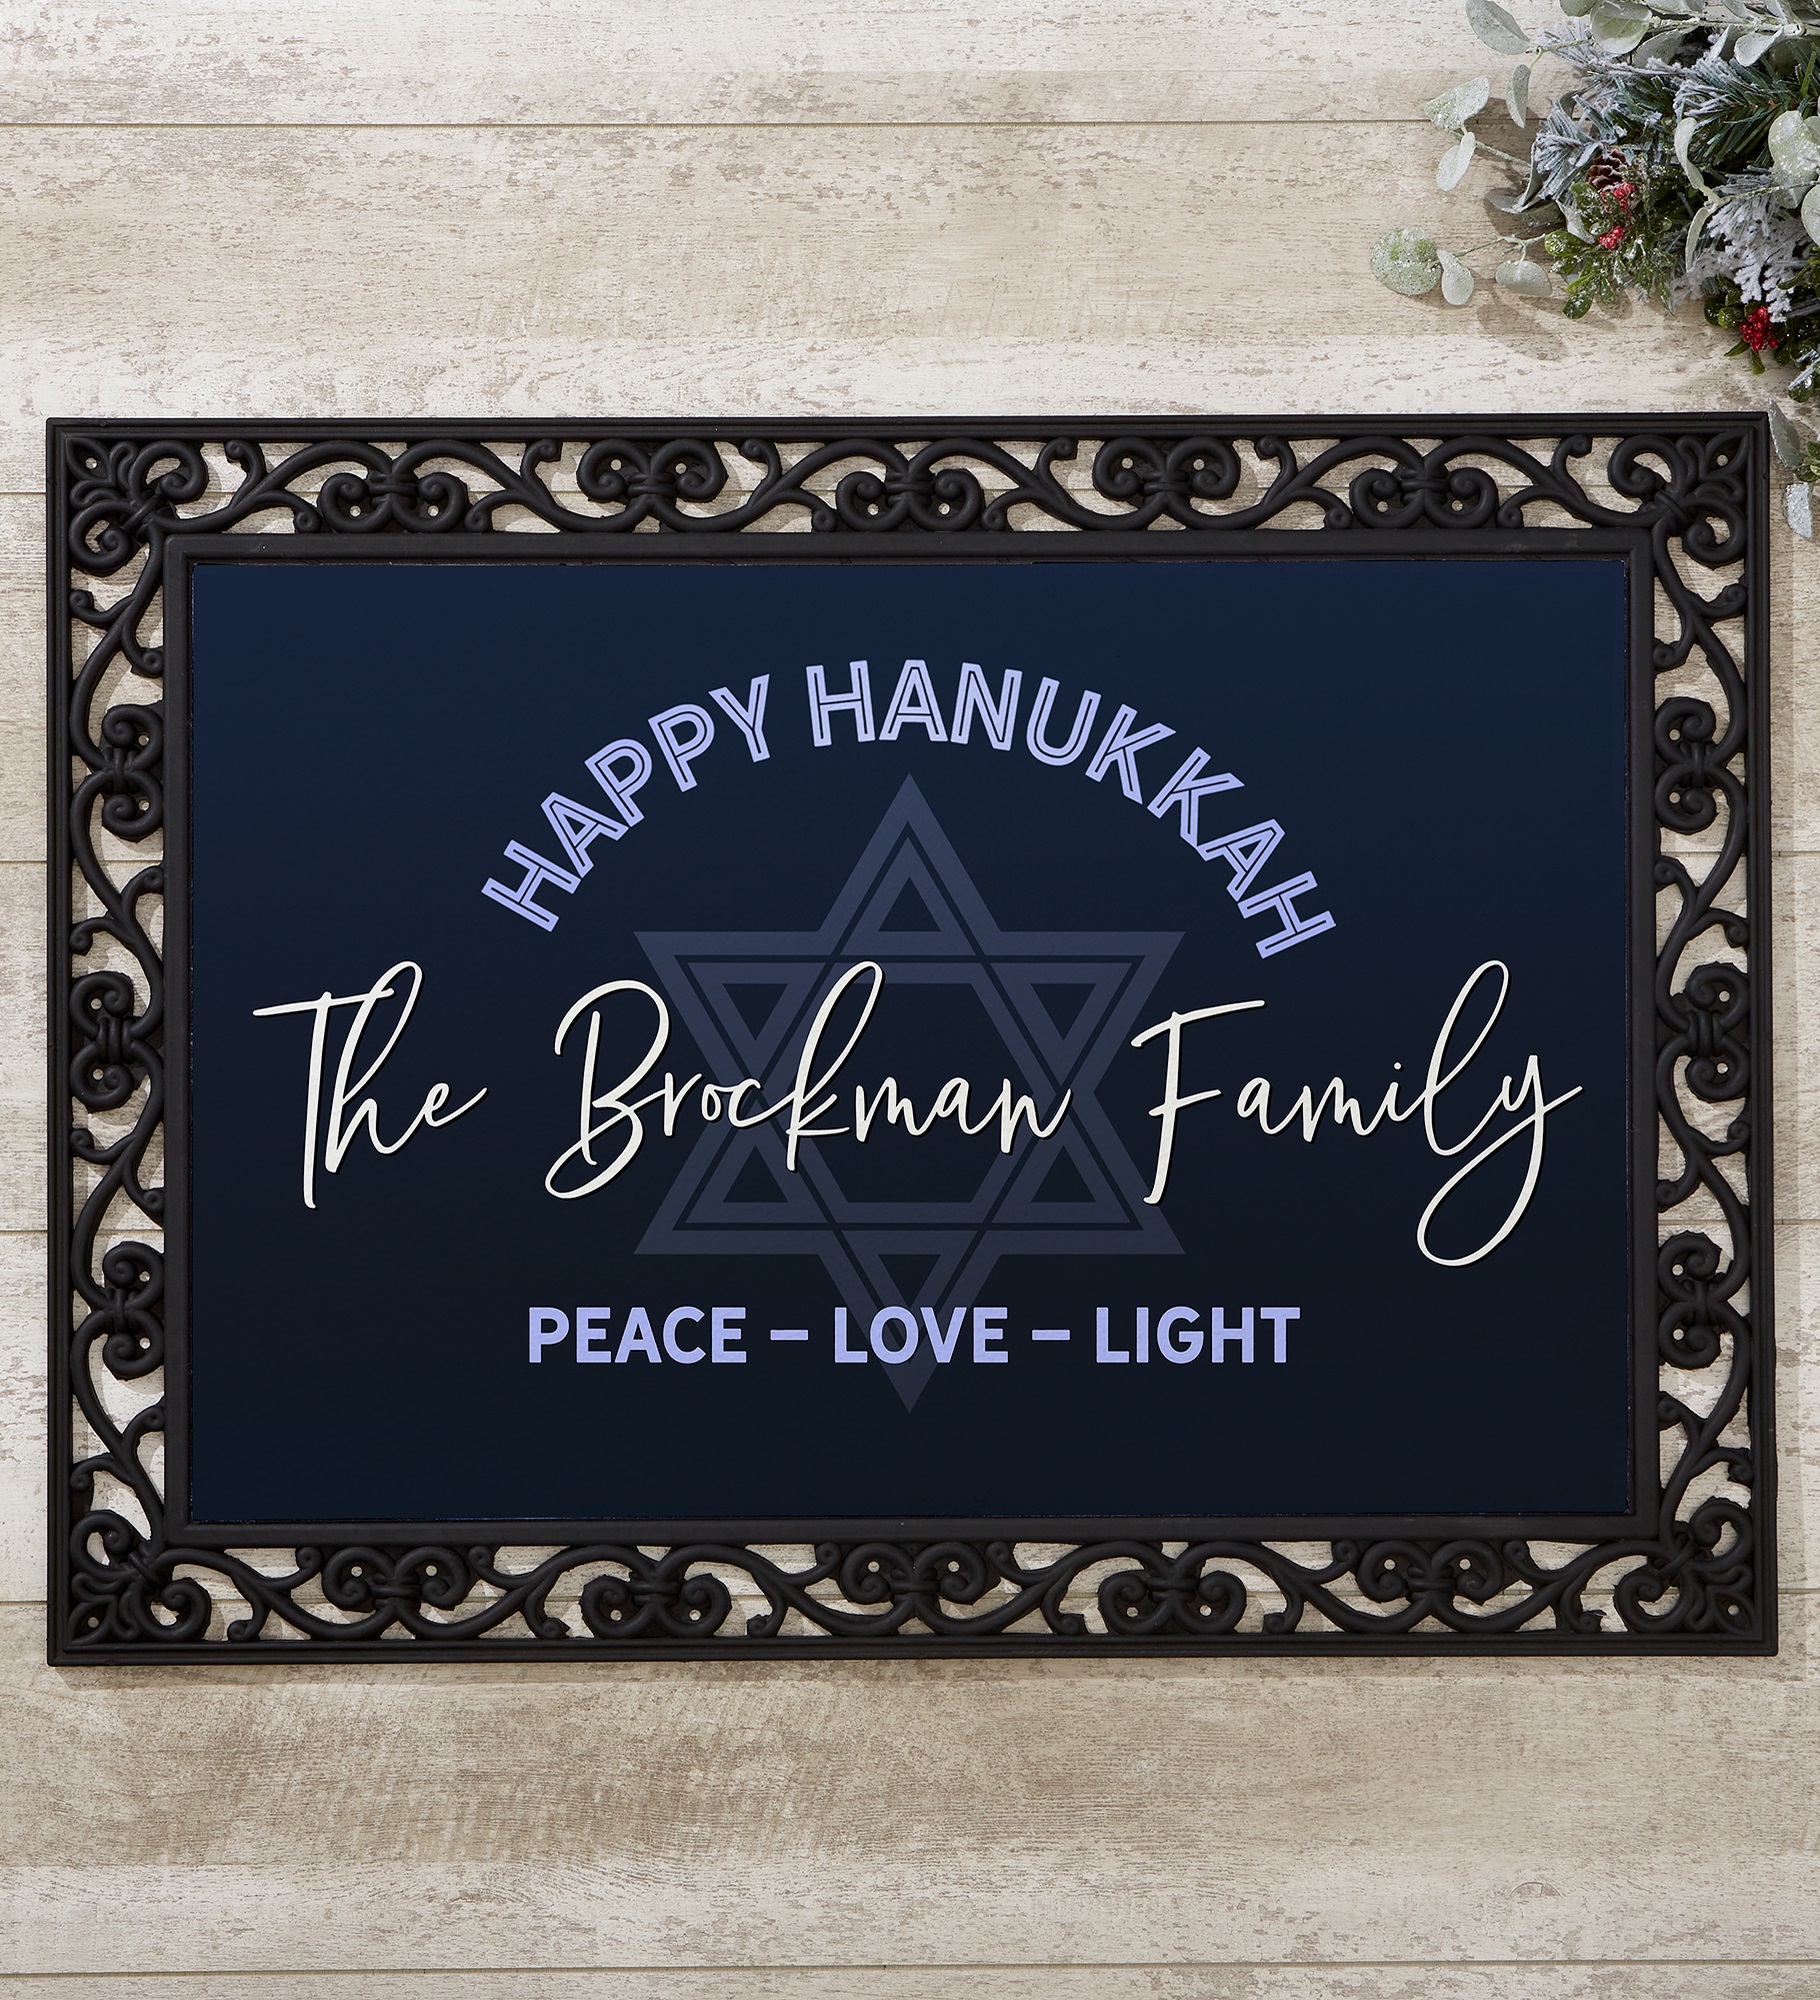 Happy Hanukkah Personalized Doormat